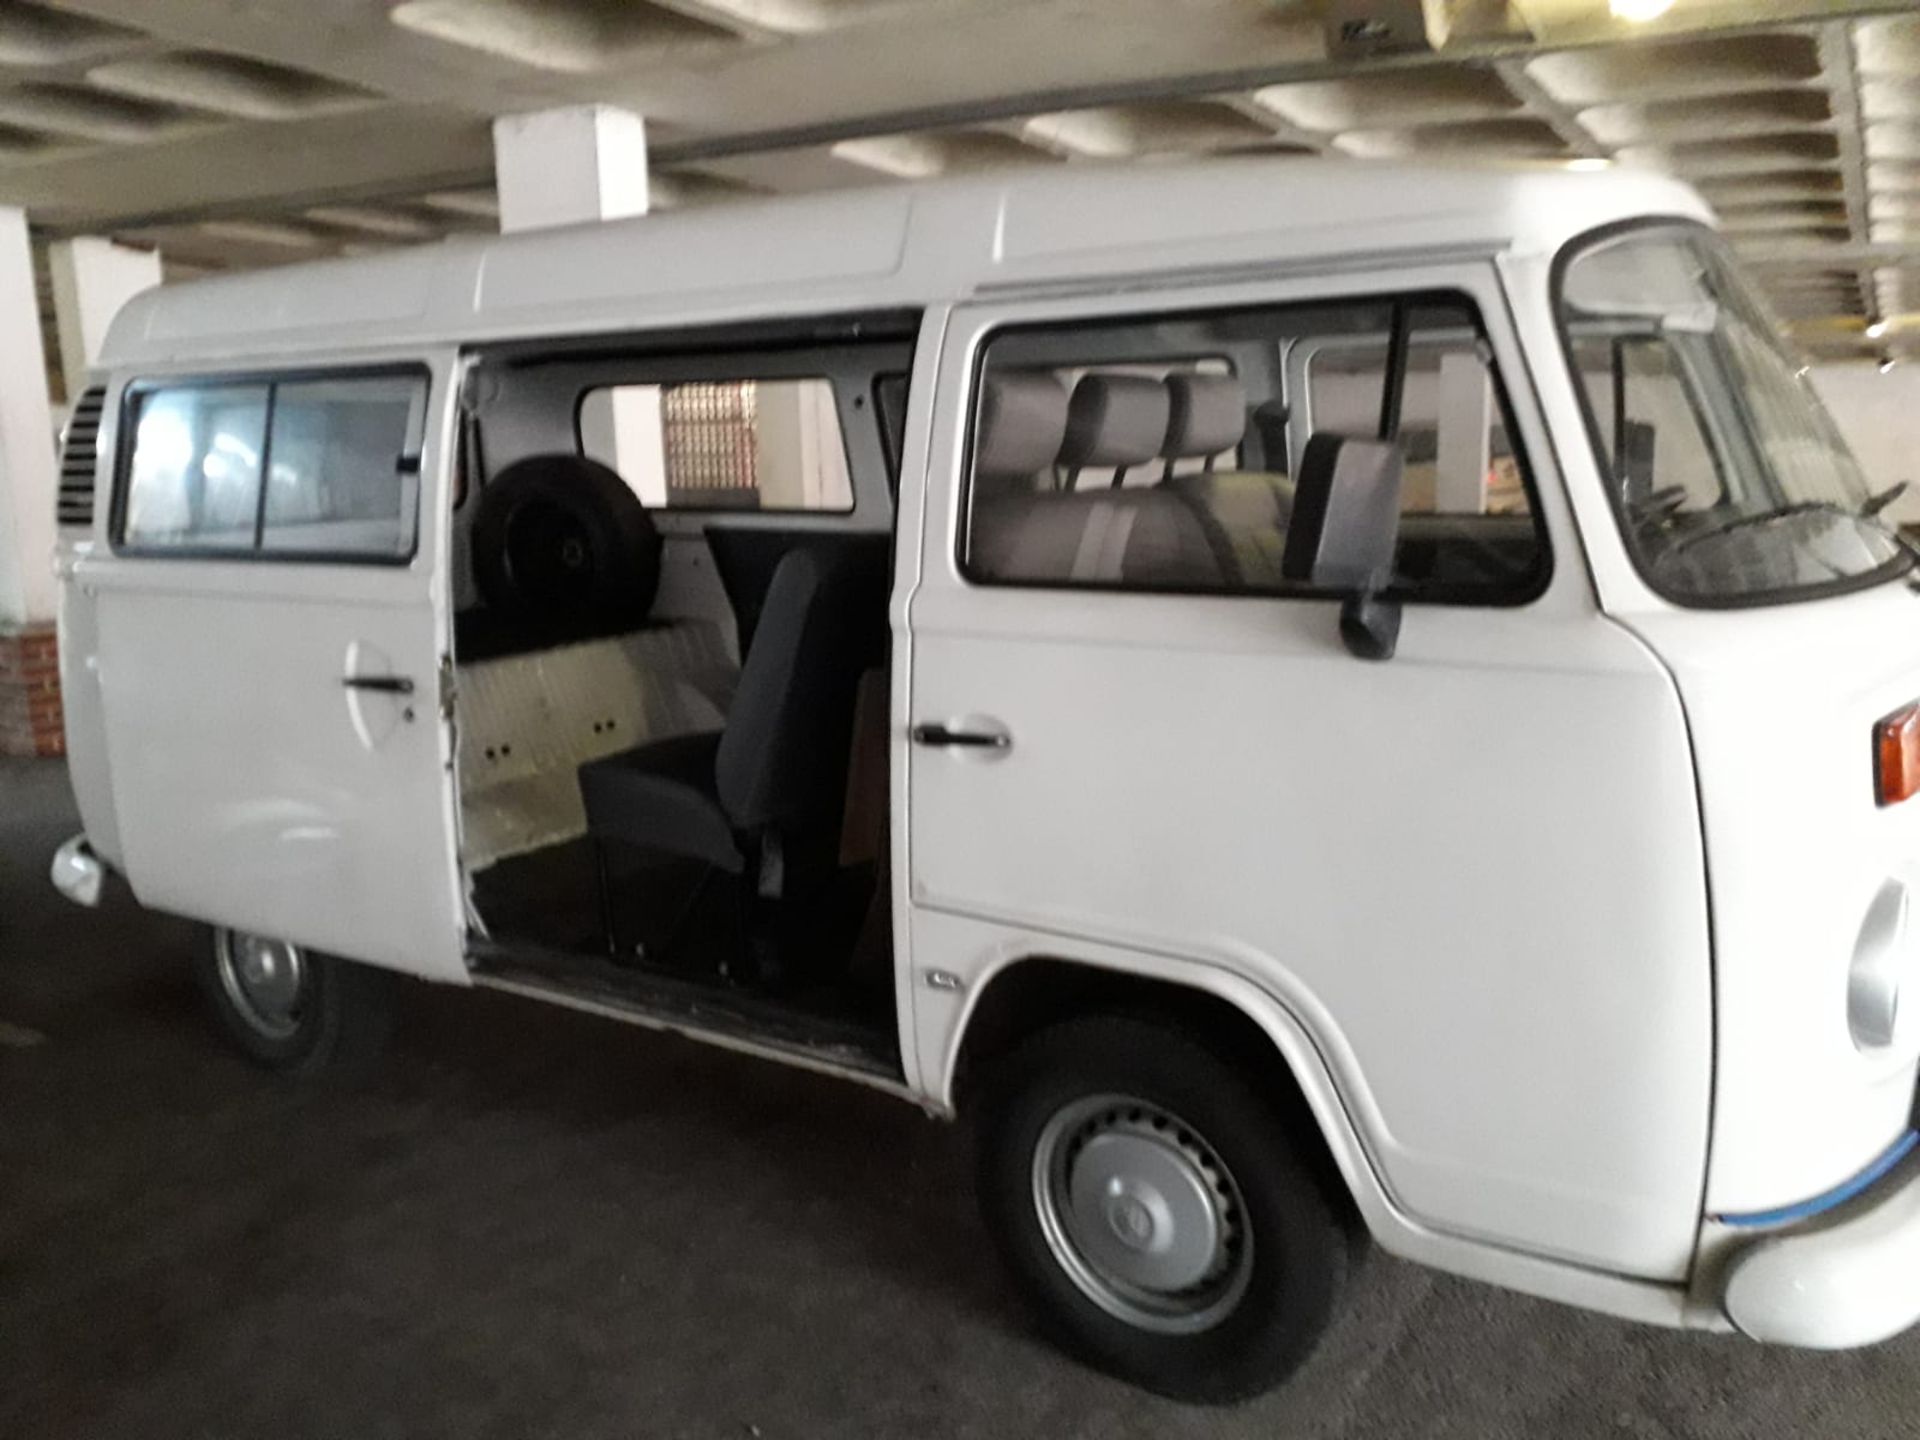 Volkswagen Camper Van - Brazilian Import (42k miles)